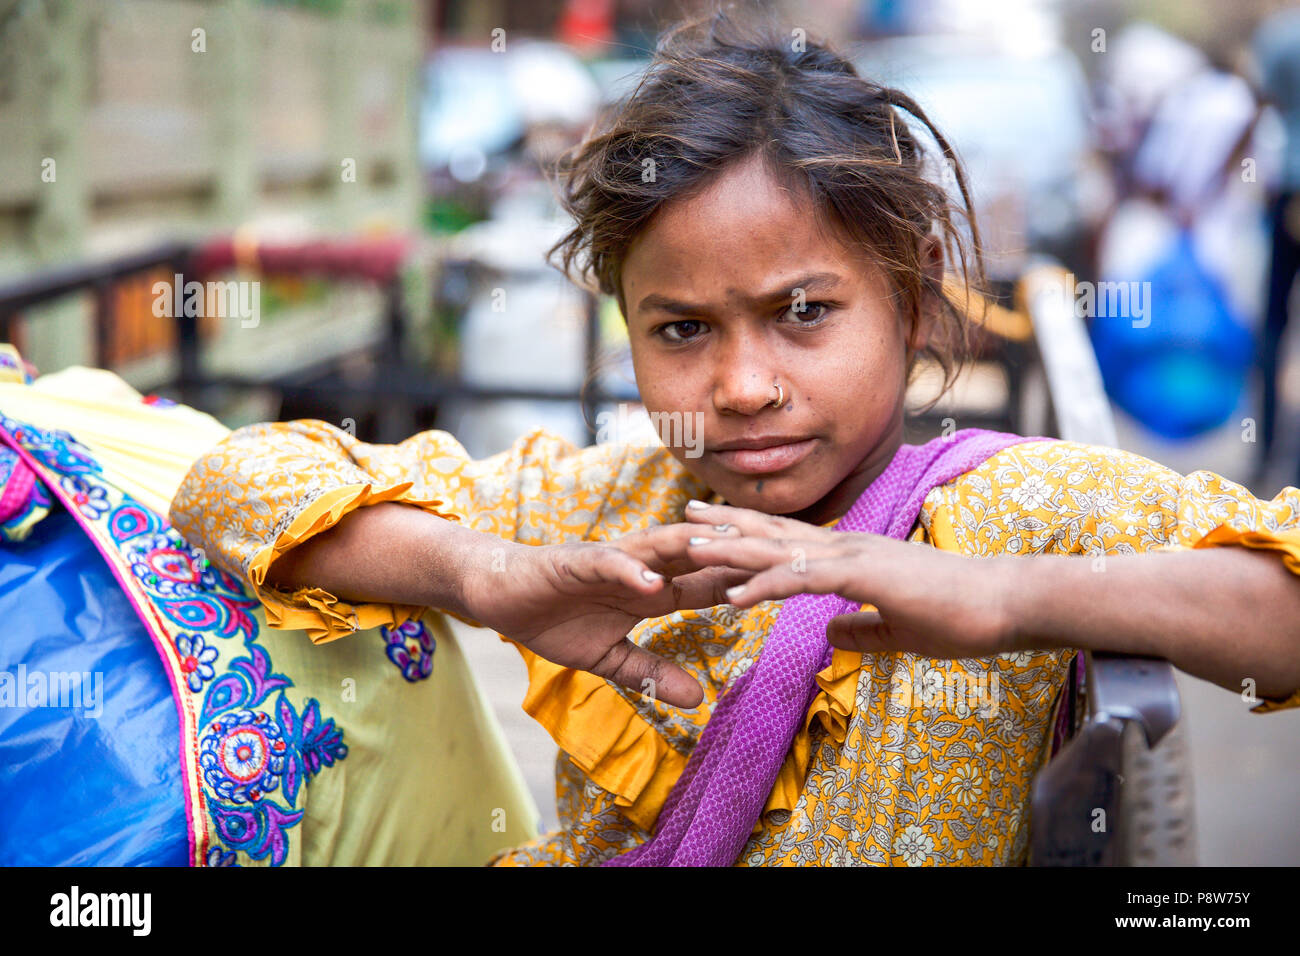 Children of Kolkata - India Stock Photo